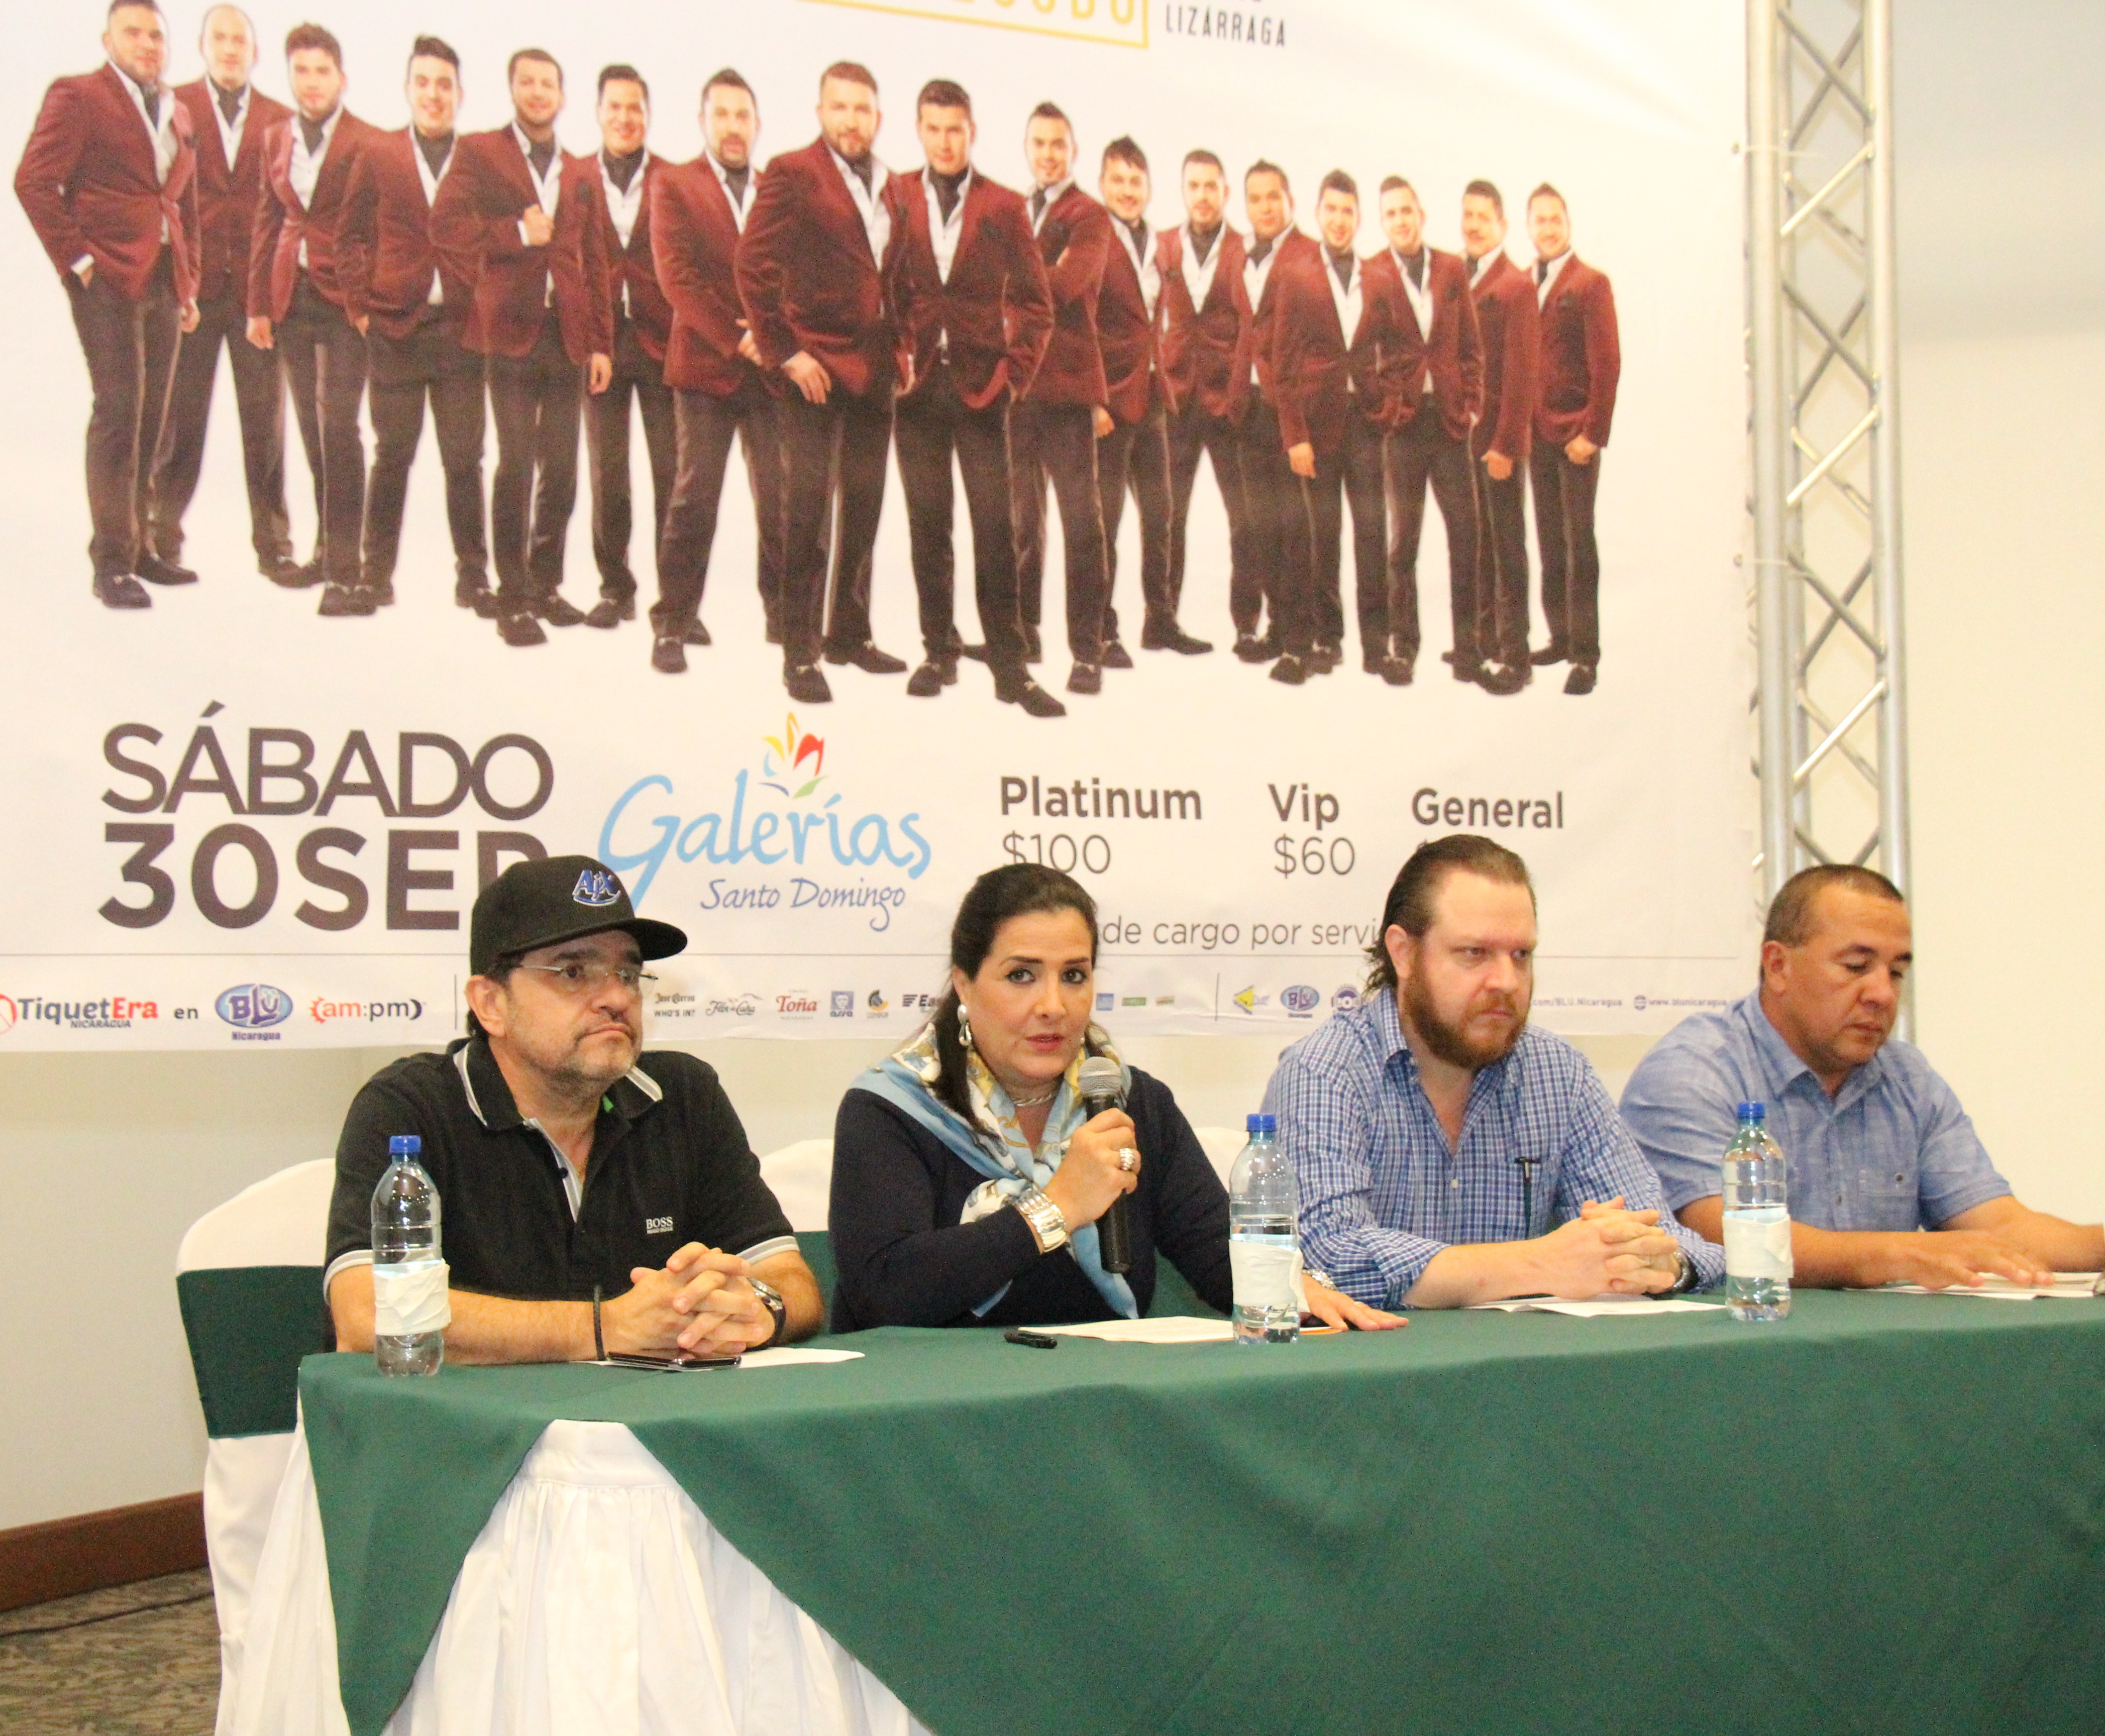 La banda más reconocida dentro del género de música banda y grupera llega a Nicaragua